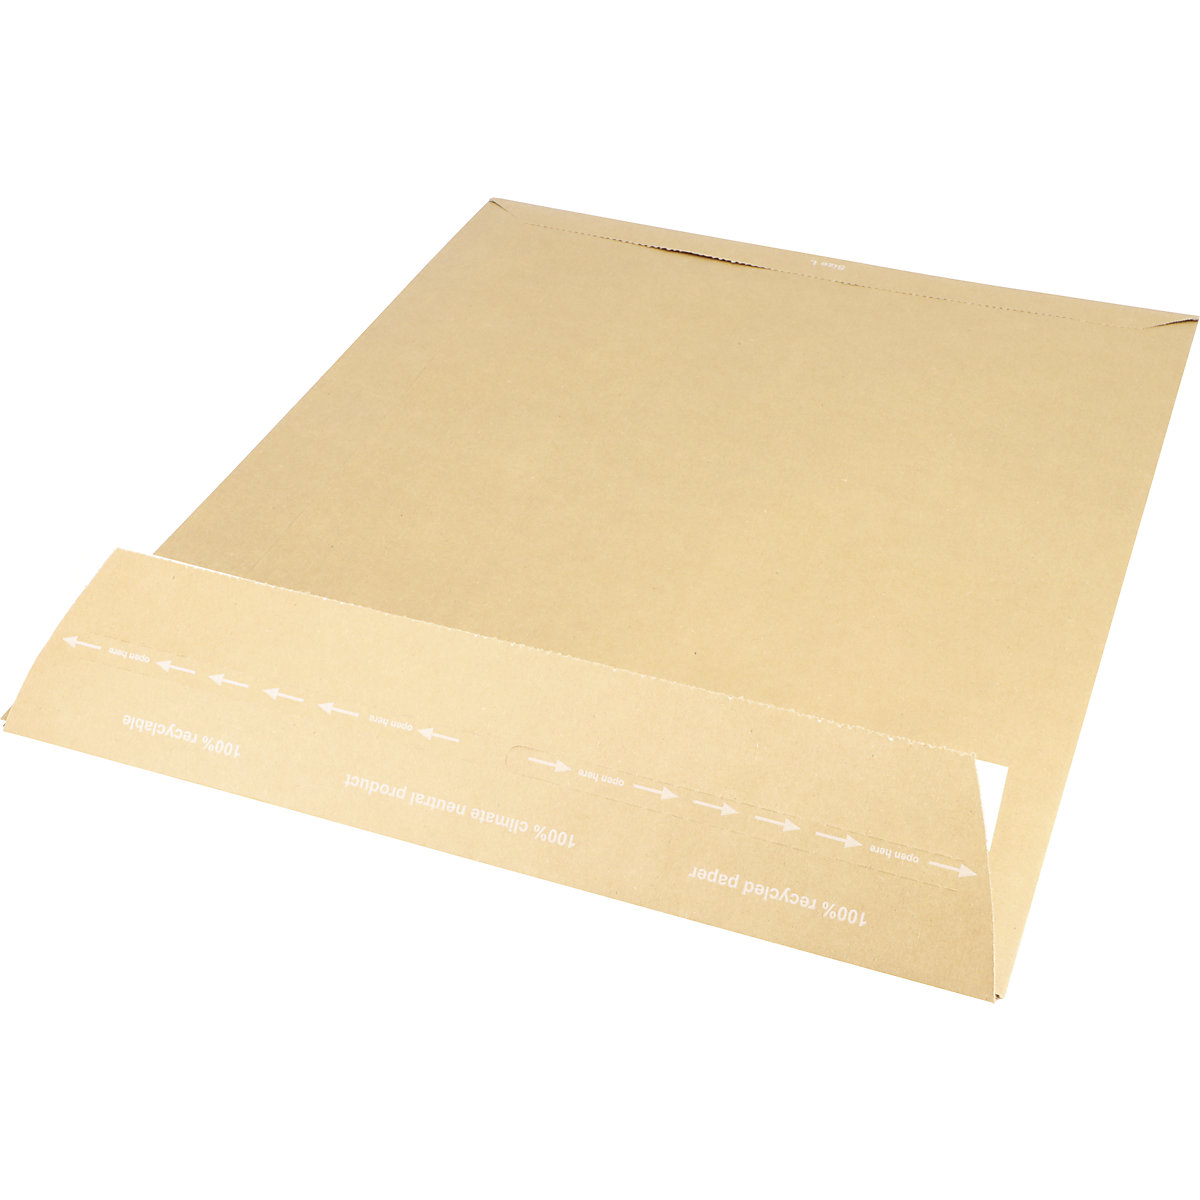 Versandtasche aus Papier E-Commerce terra, retourengeeignet, LxB 480 x 380 mm, VE 200 Stk-1